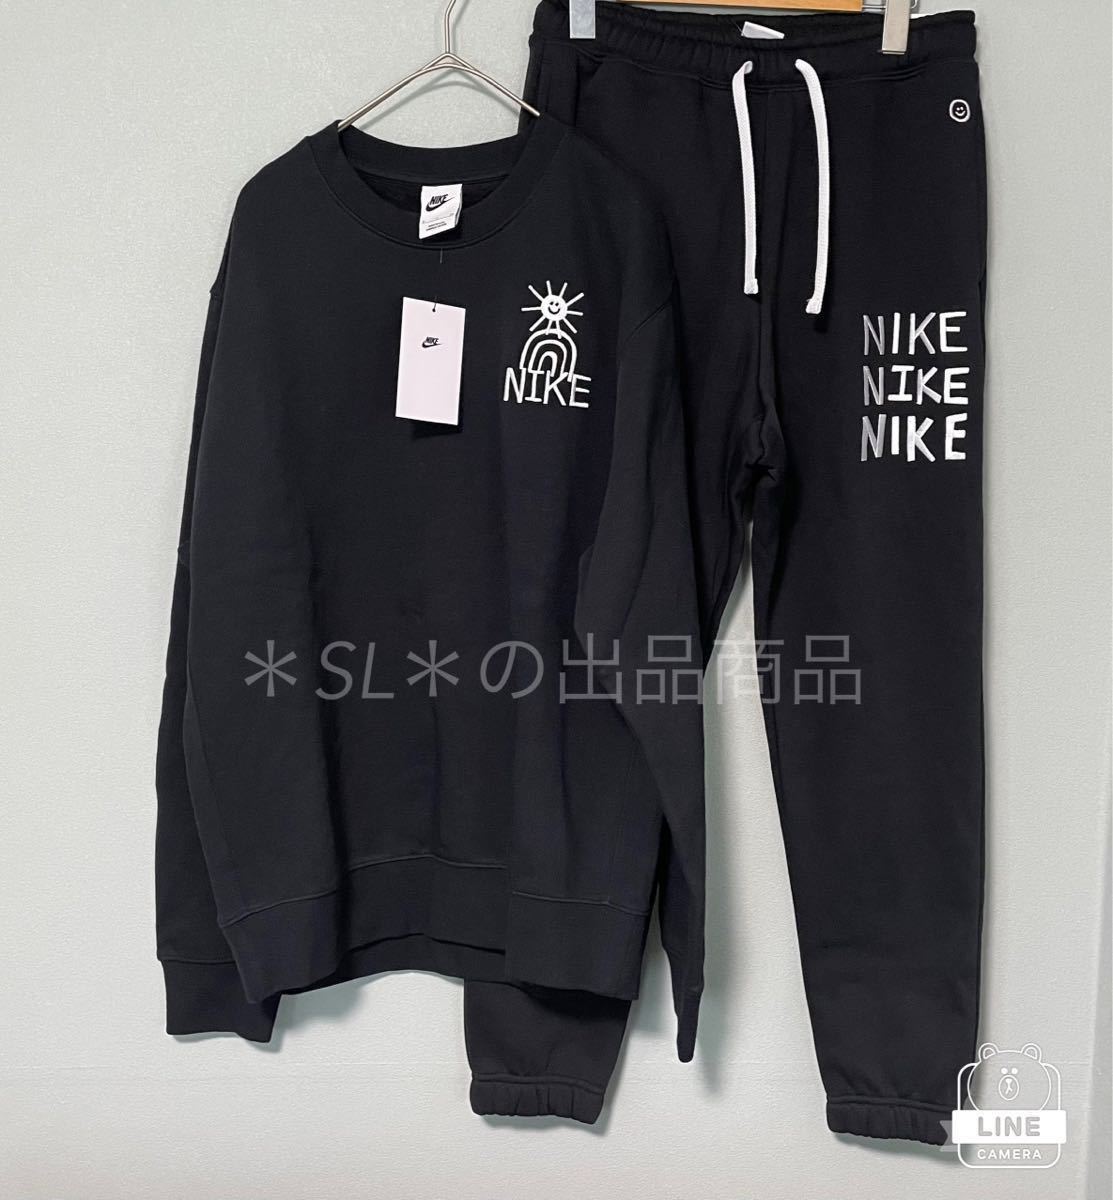 XL  новый товар  NIKE  Nike   черный   Sweat   верх и низ   установка   ... ... брюки   ...  вышивание   ...  олимпийка  NSW HBR-C BB  черный 